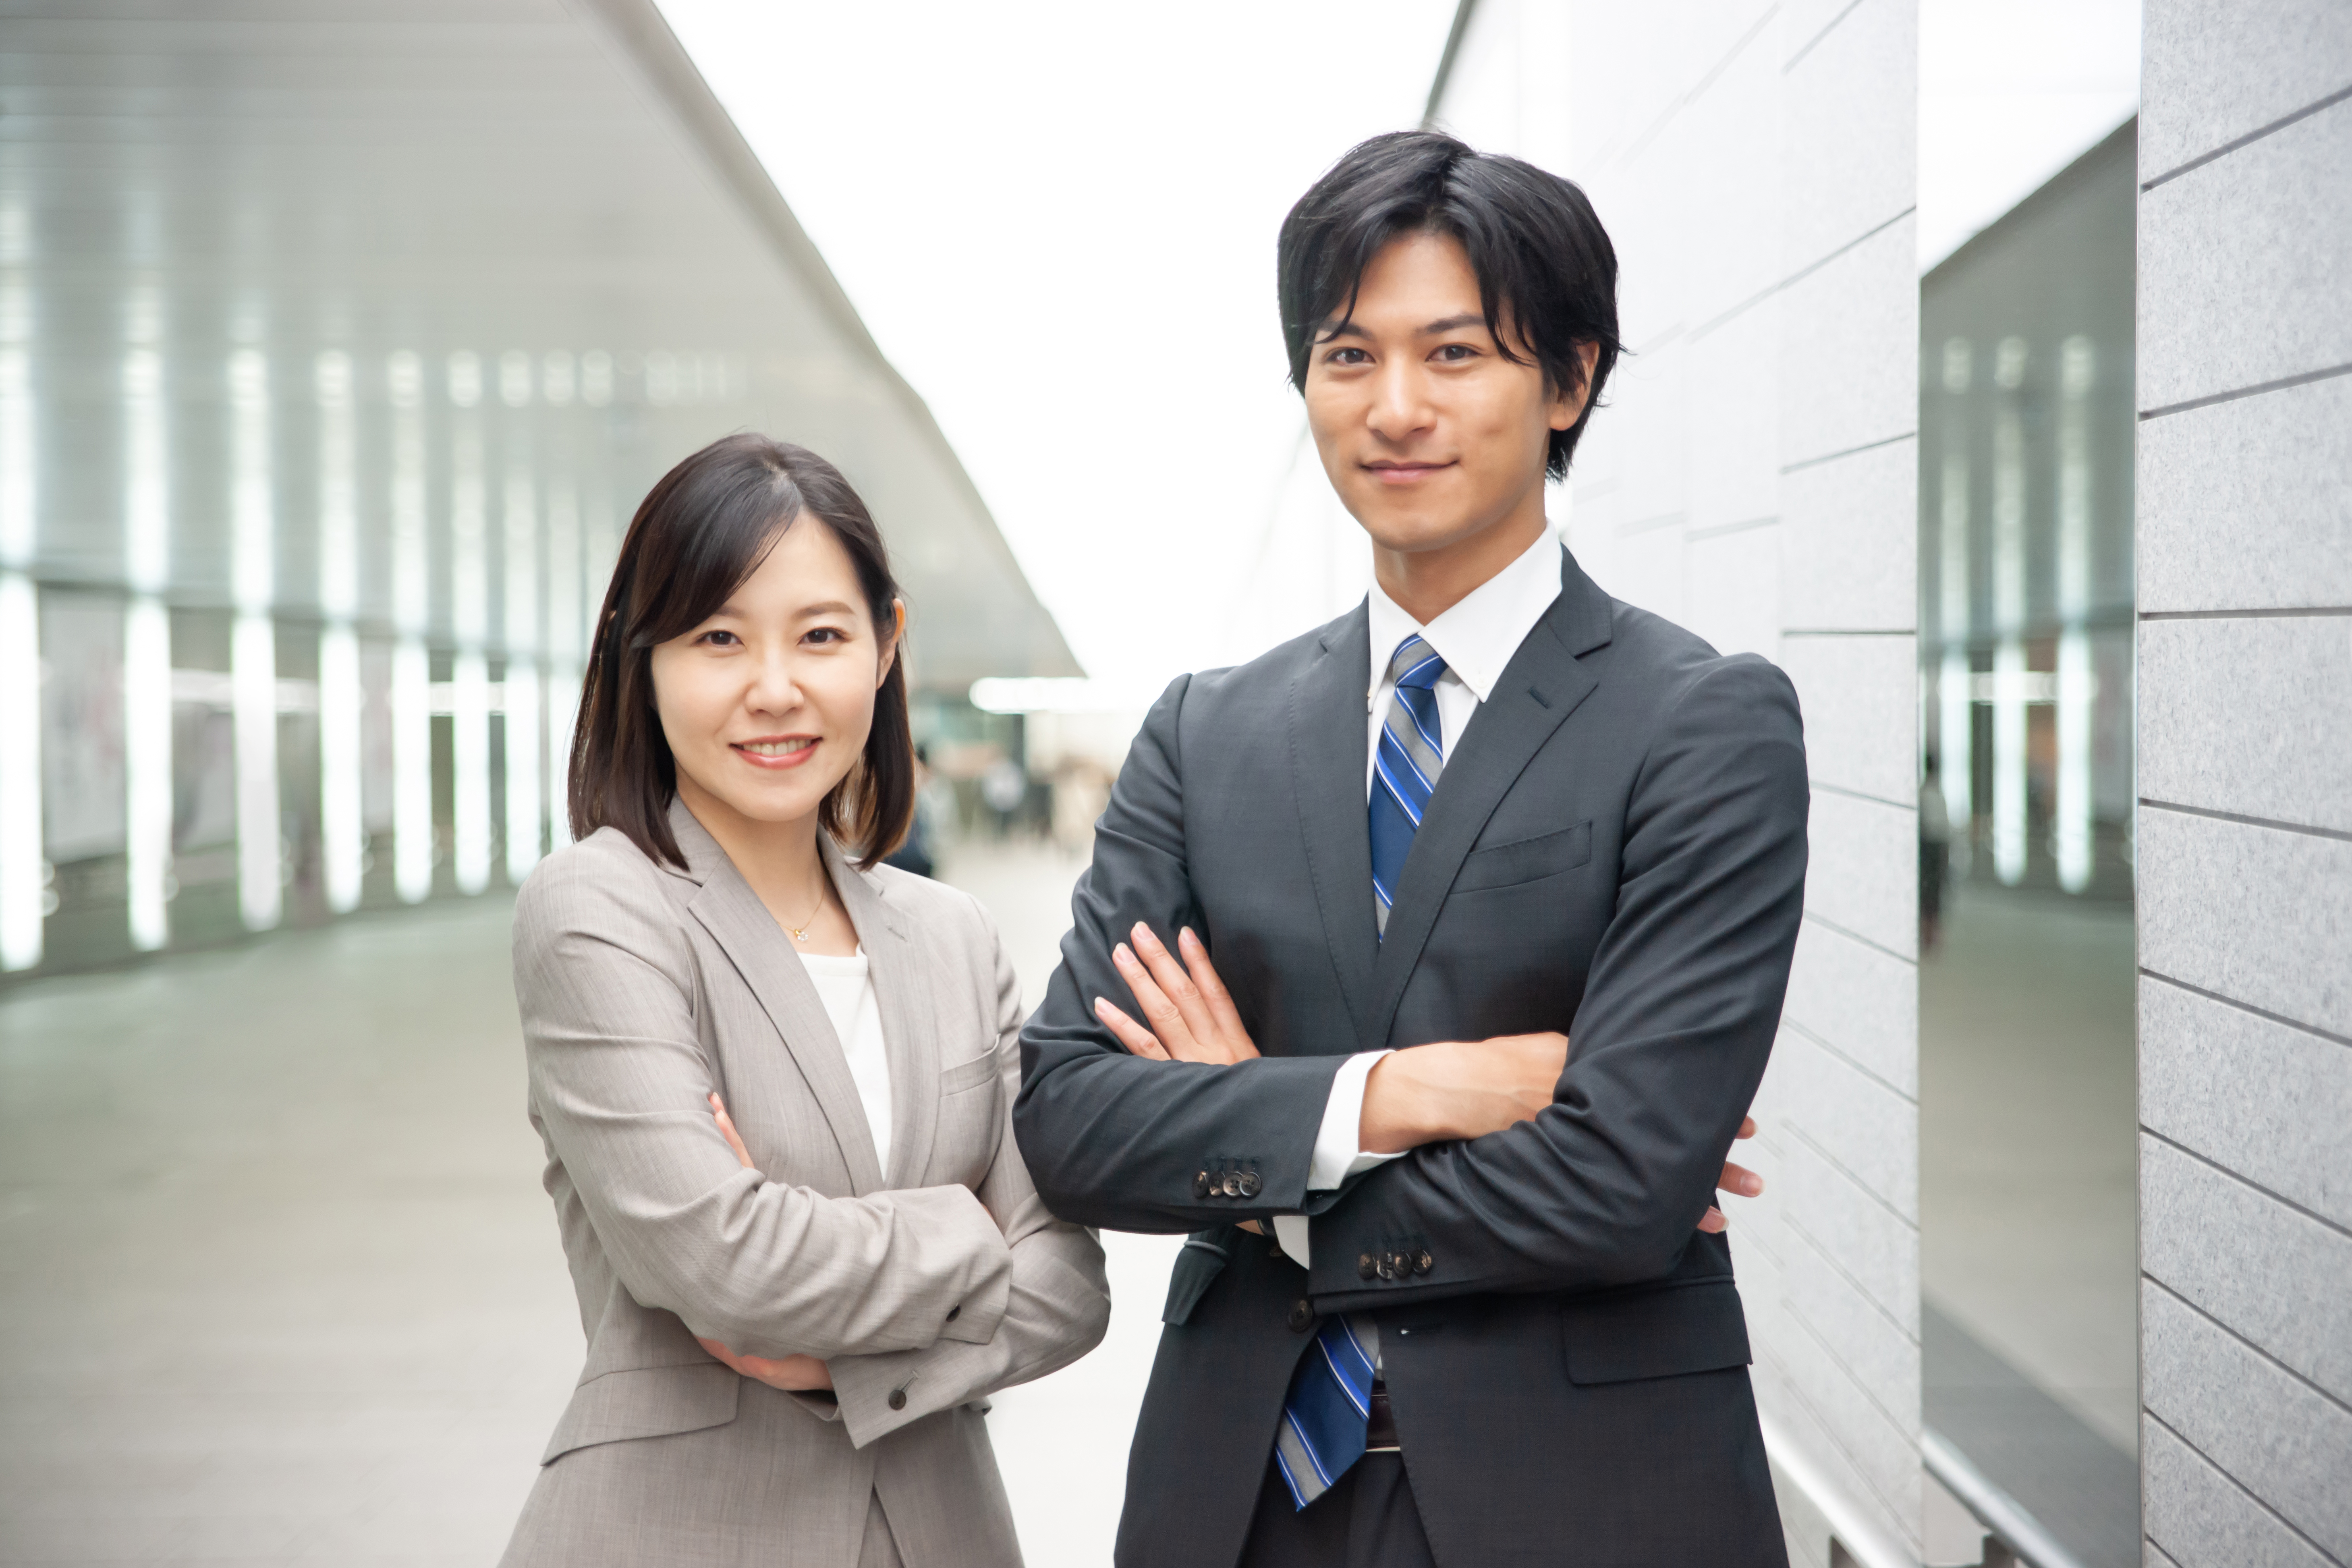 【札幌】マネージャー職/人材派遣サービスの法人営業サムネイル